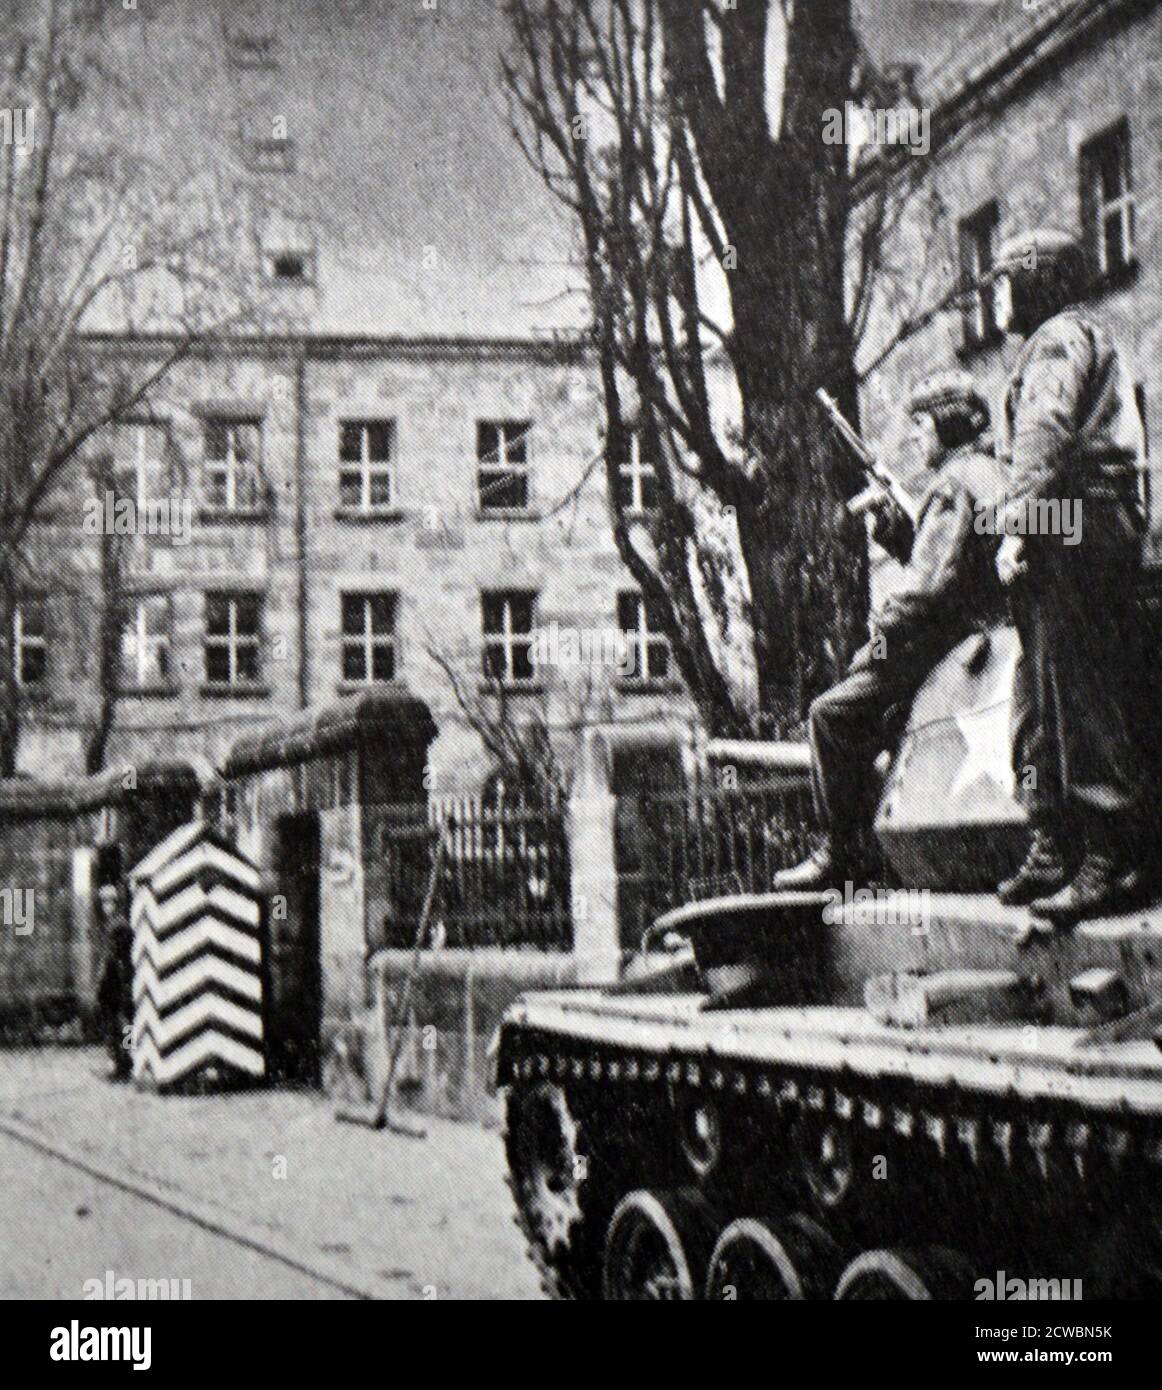 Photographie en noir et blanc de la Seconde Guerre mondiale (1939-1945) montrant des images relatives au procès de Nuremberg, la plus grande accusation de l'histoire, et qui a commencé en novembre 1945; l'entrée de la prison de Nuremberg, gardée par des soldats alliés et un char. Banque D'Images